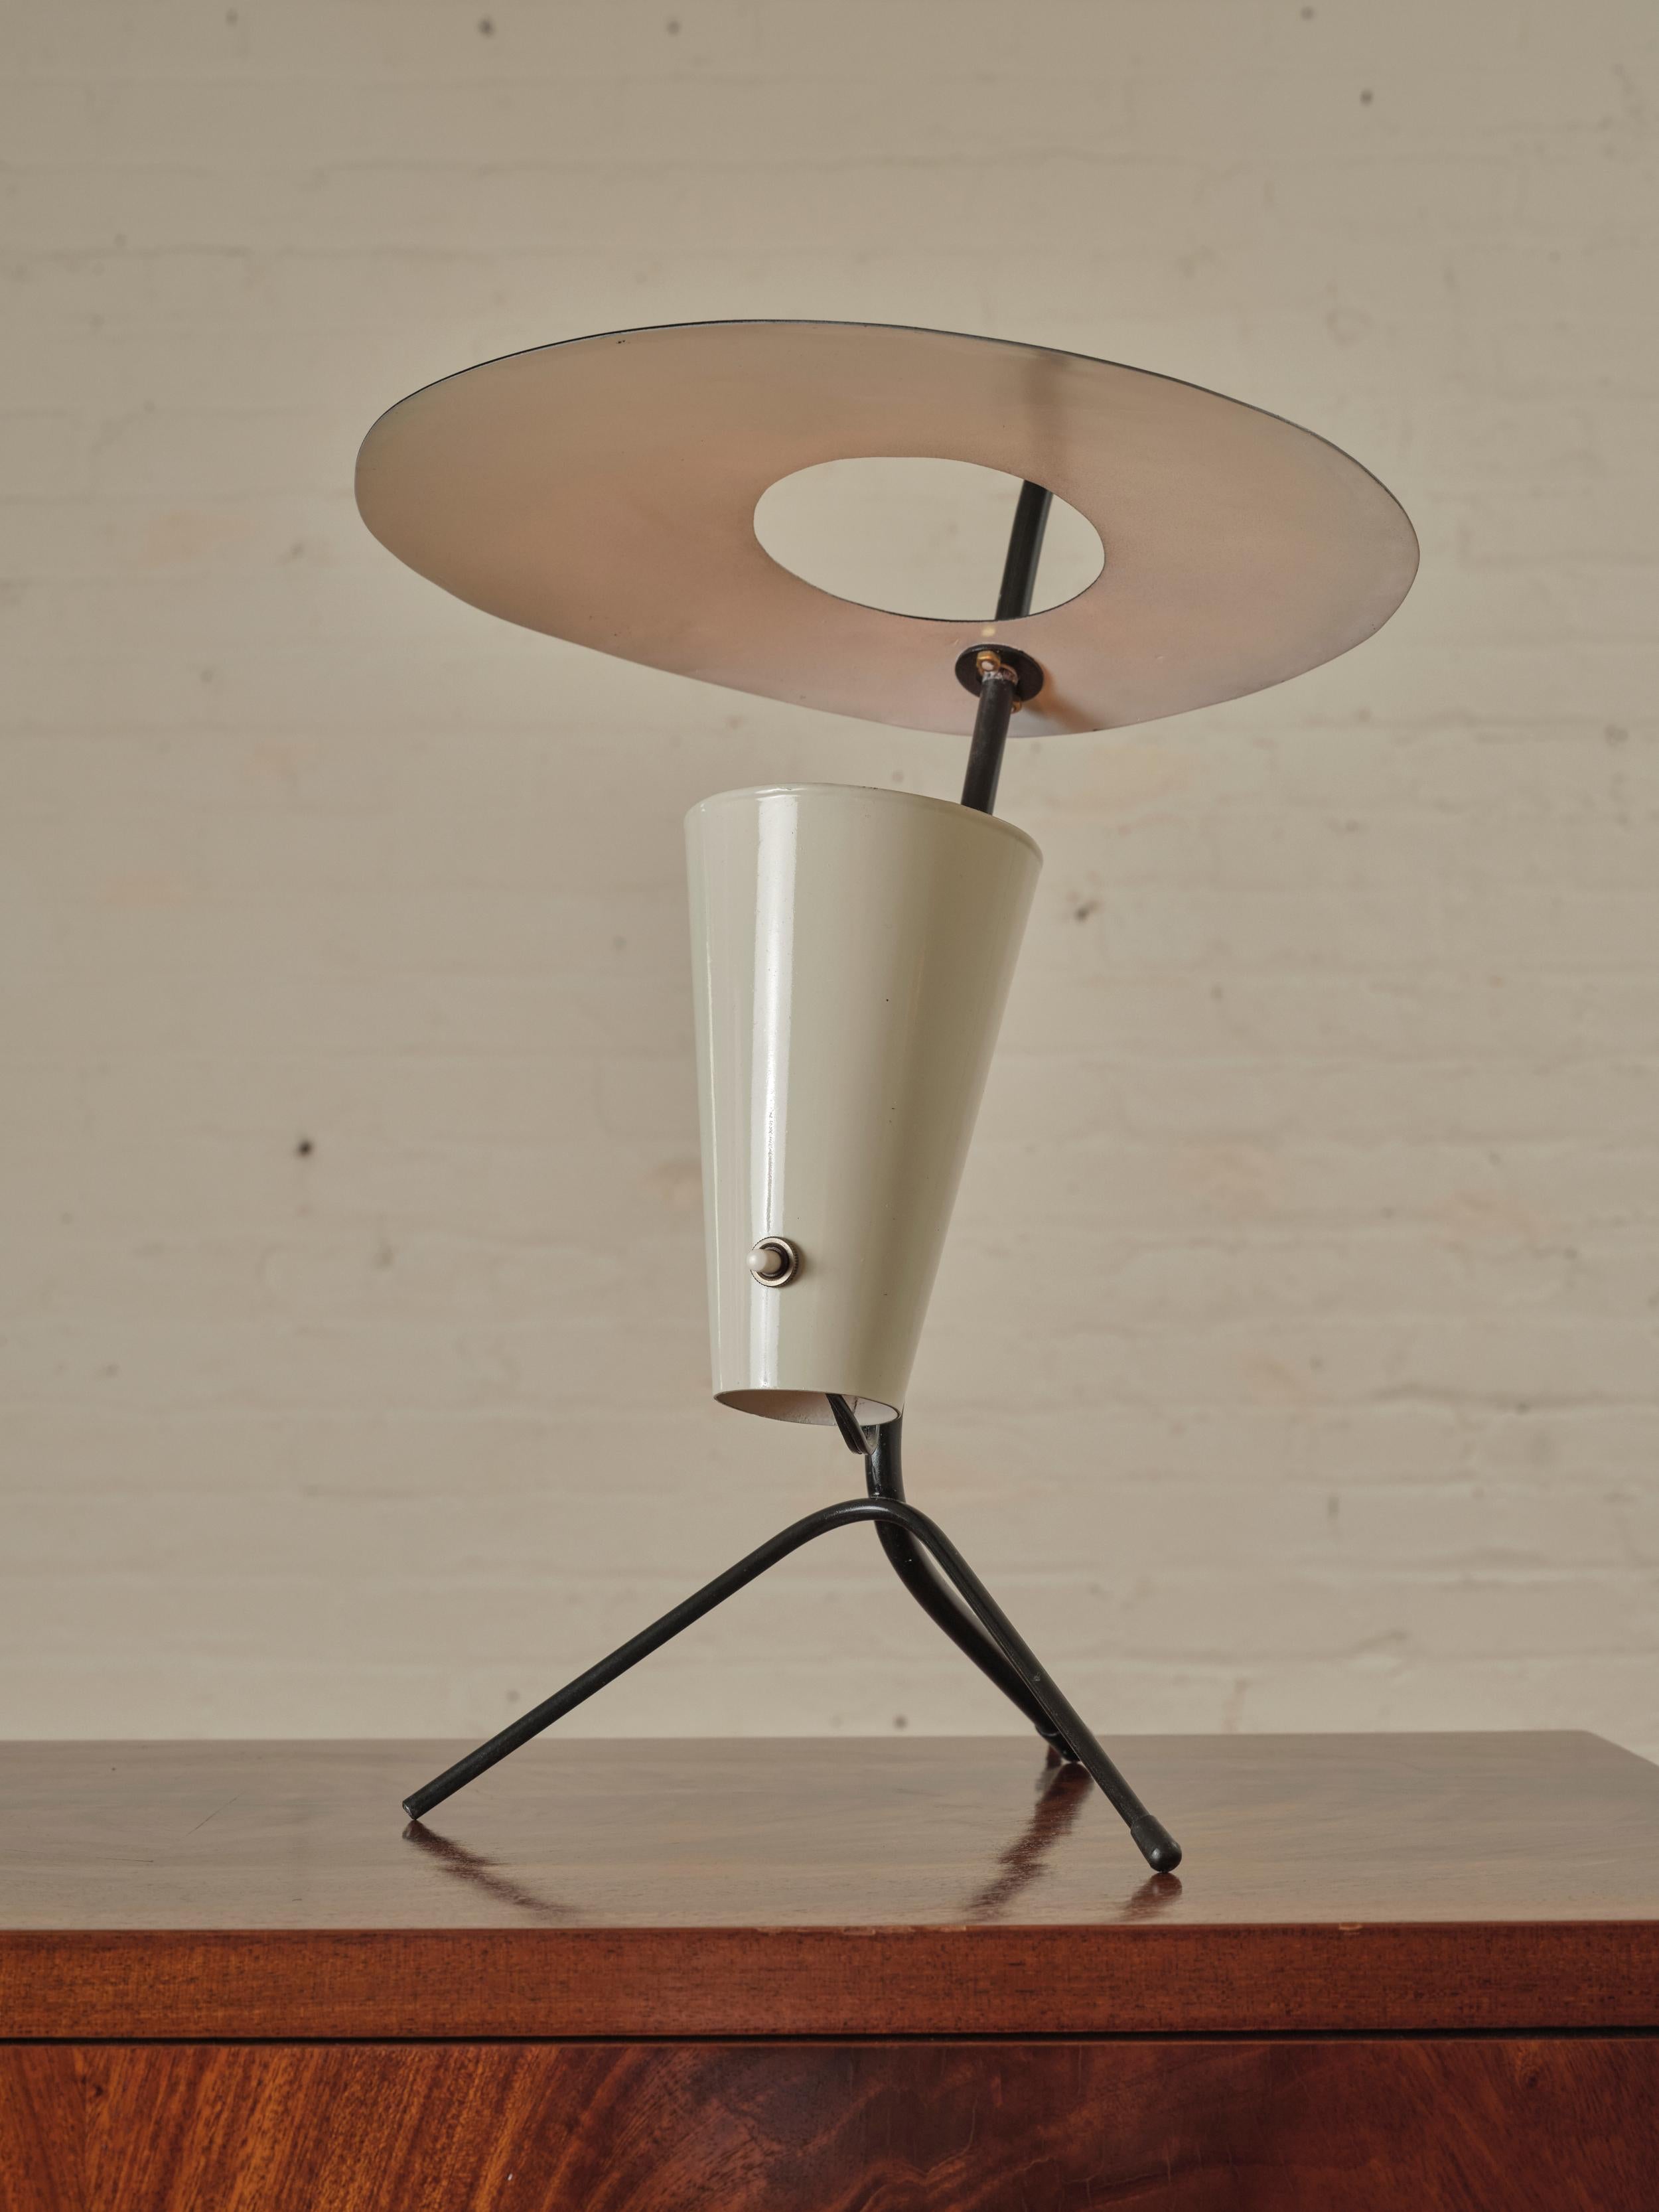 Lampe de table tripode française, attribuée à Pierre Guariche. La lampe est couronnée par un abat-jour disque chic en métal émaillé, soutenu par une base tripode, ce qui ajoute de la stabilité et un élément sculptural à son design